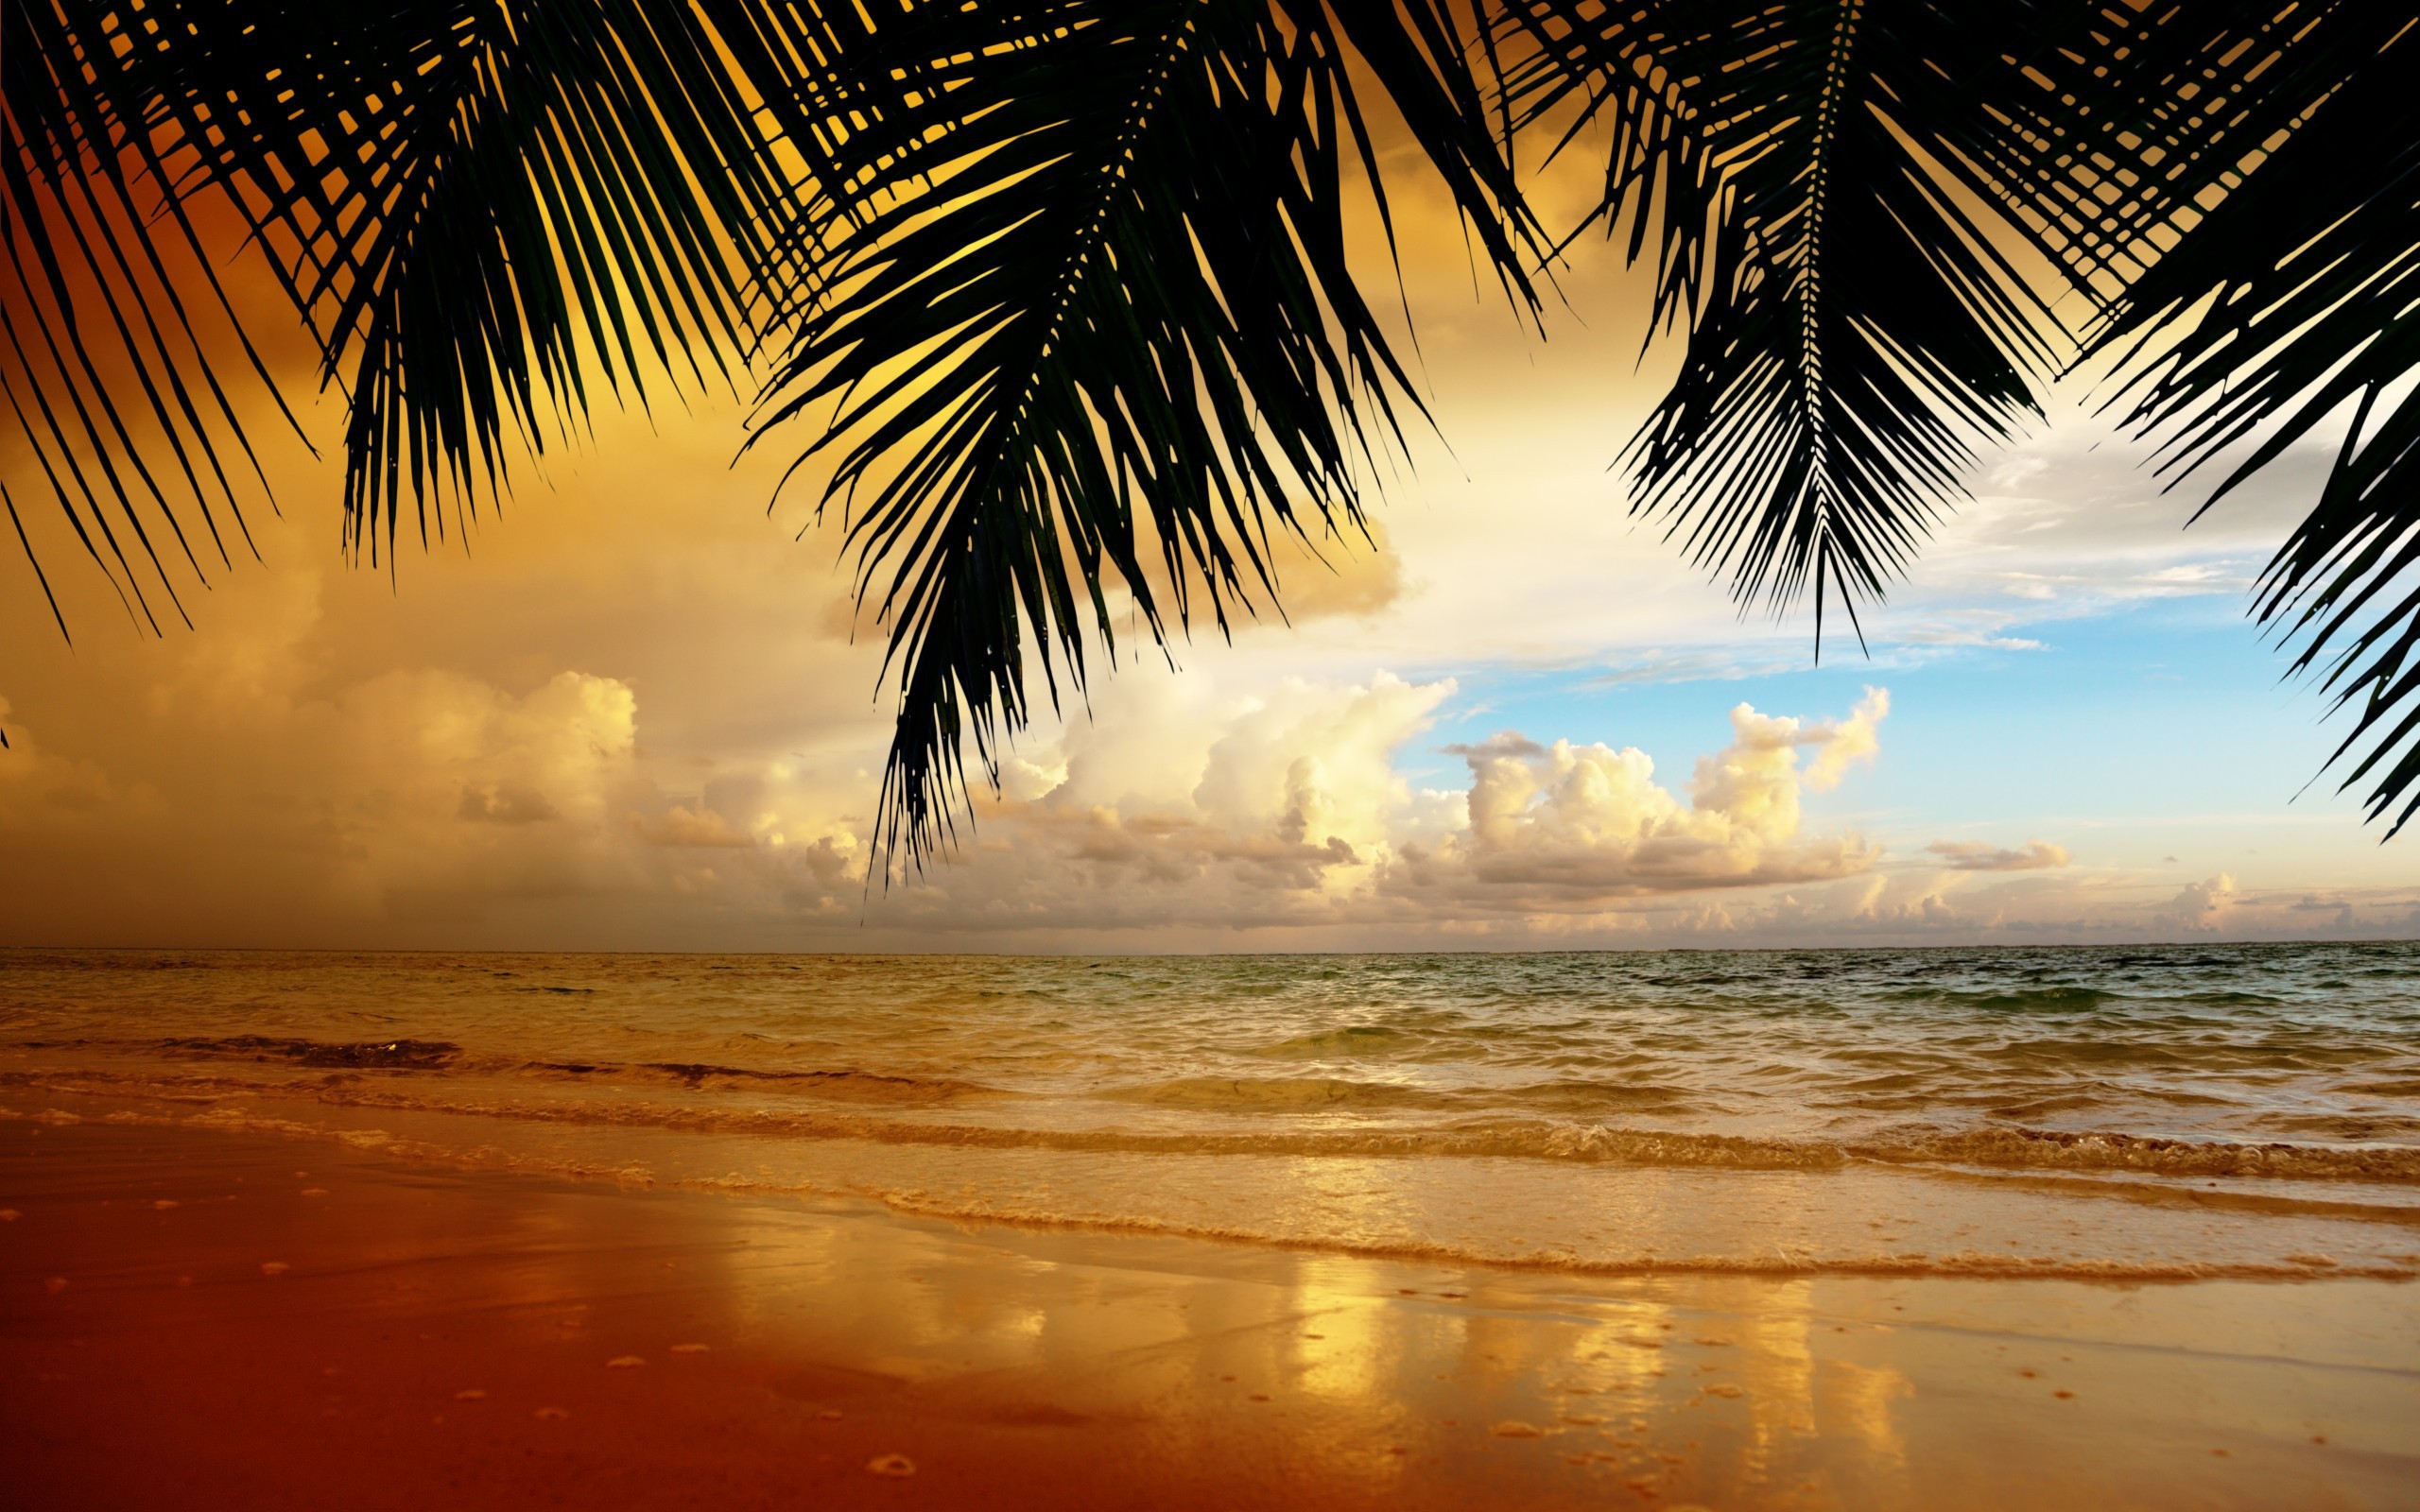 Скачать обои бесплатно Пальмы, Пейзаж, Пляж картинка на рабочий стол ПК